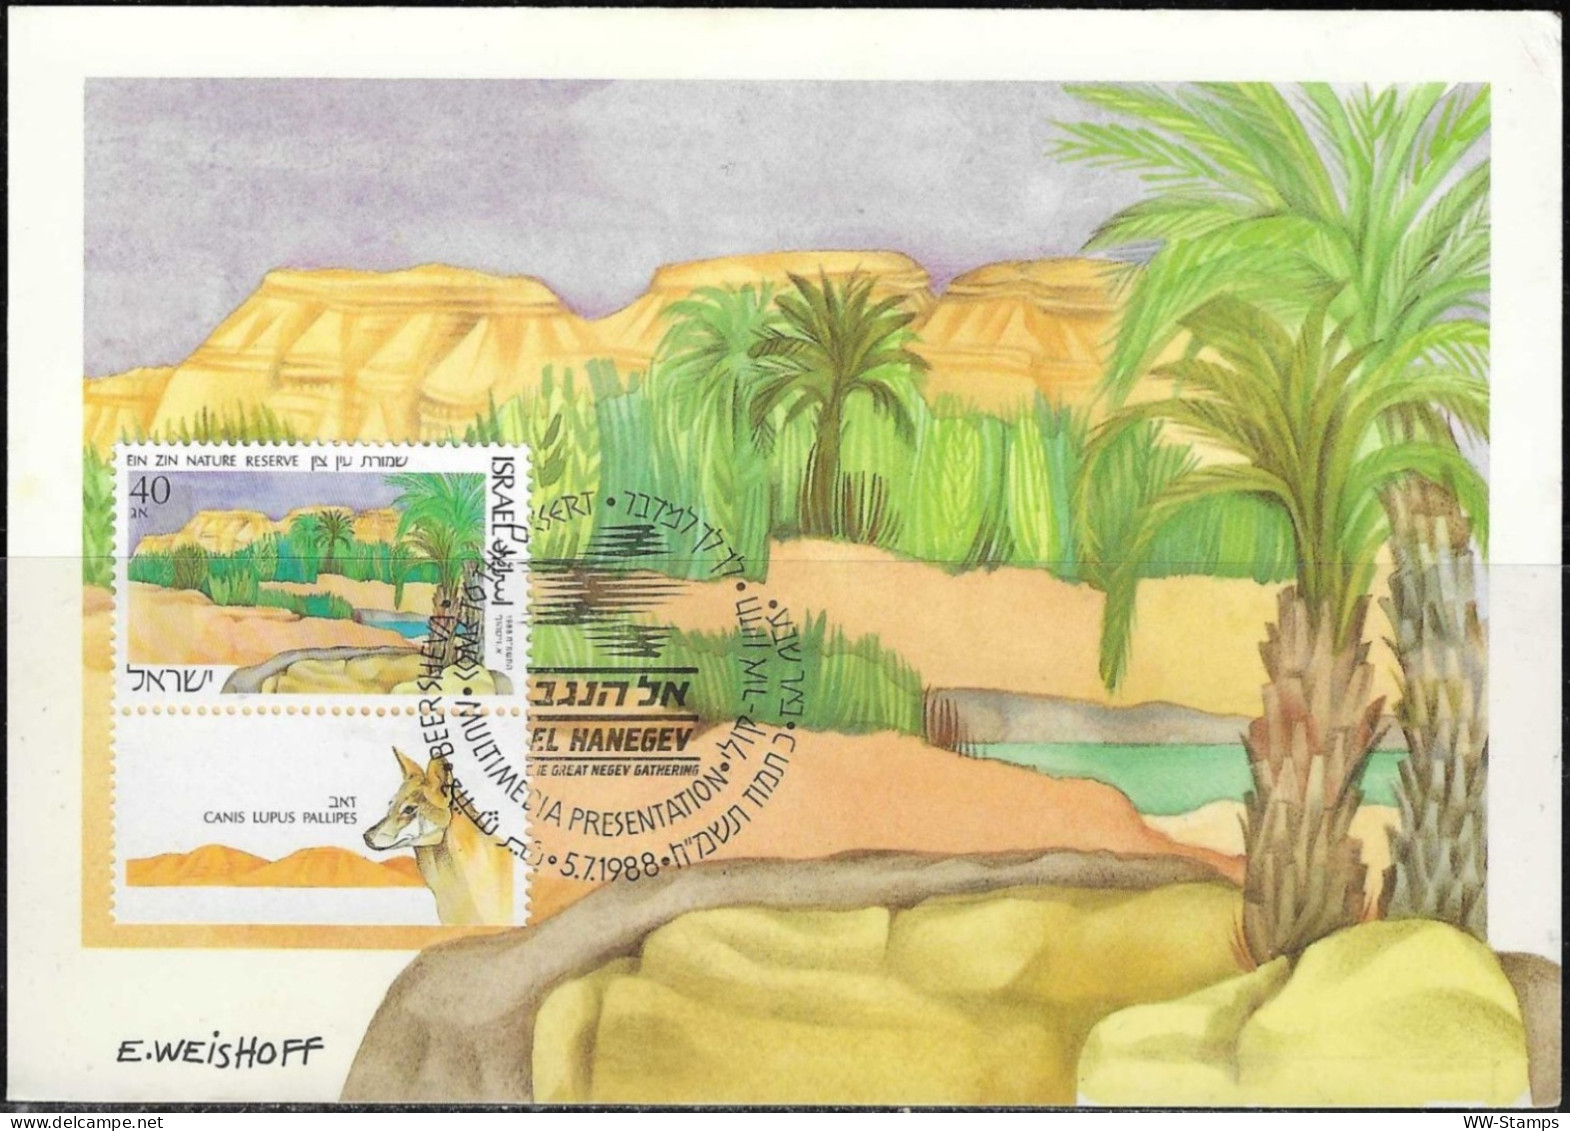 Israel 1988 Maximum Card Ein Zin Nature Reserve In The Negev Lupus [ILT1118] - Cartoline Maximum